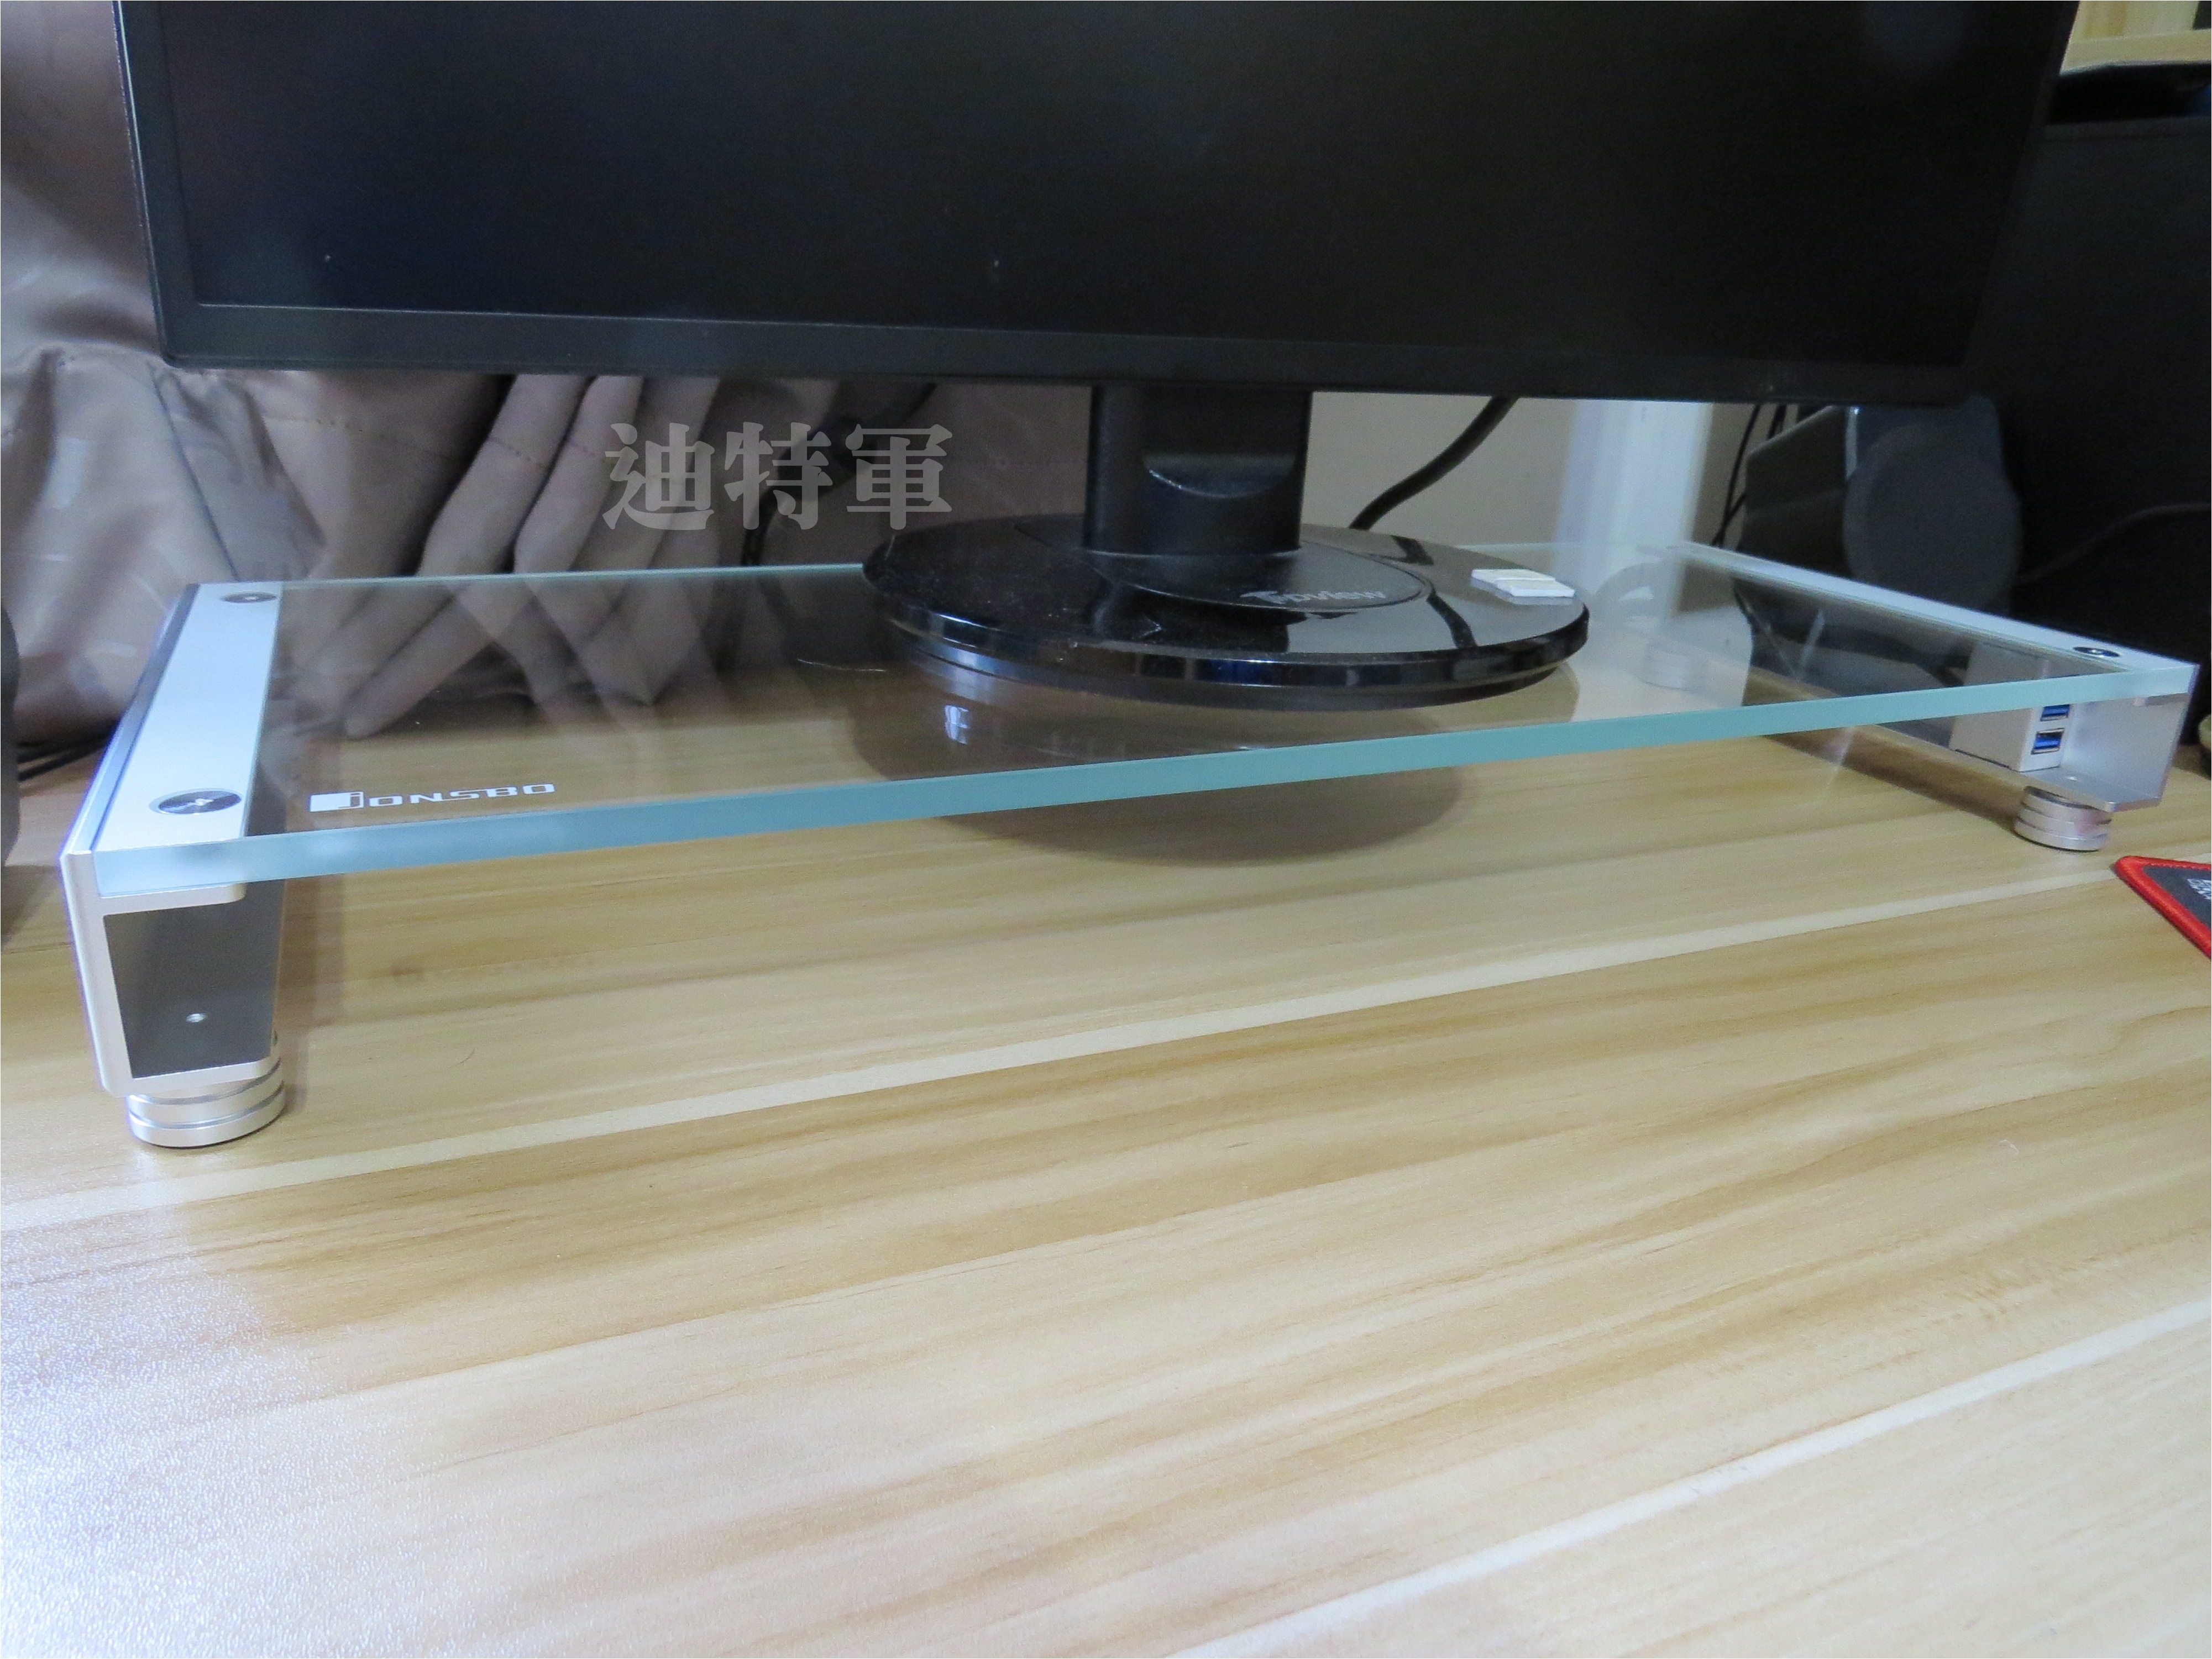 <br/><br/>  【迪特軍】Jonsbo 喬思伯 GA-01 鋁合金 LED 白光螢幕架 鋼化玻璃 2孔 USB3.0 新品上市 現貨<br/><br/>